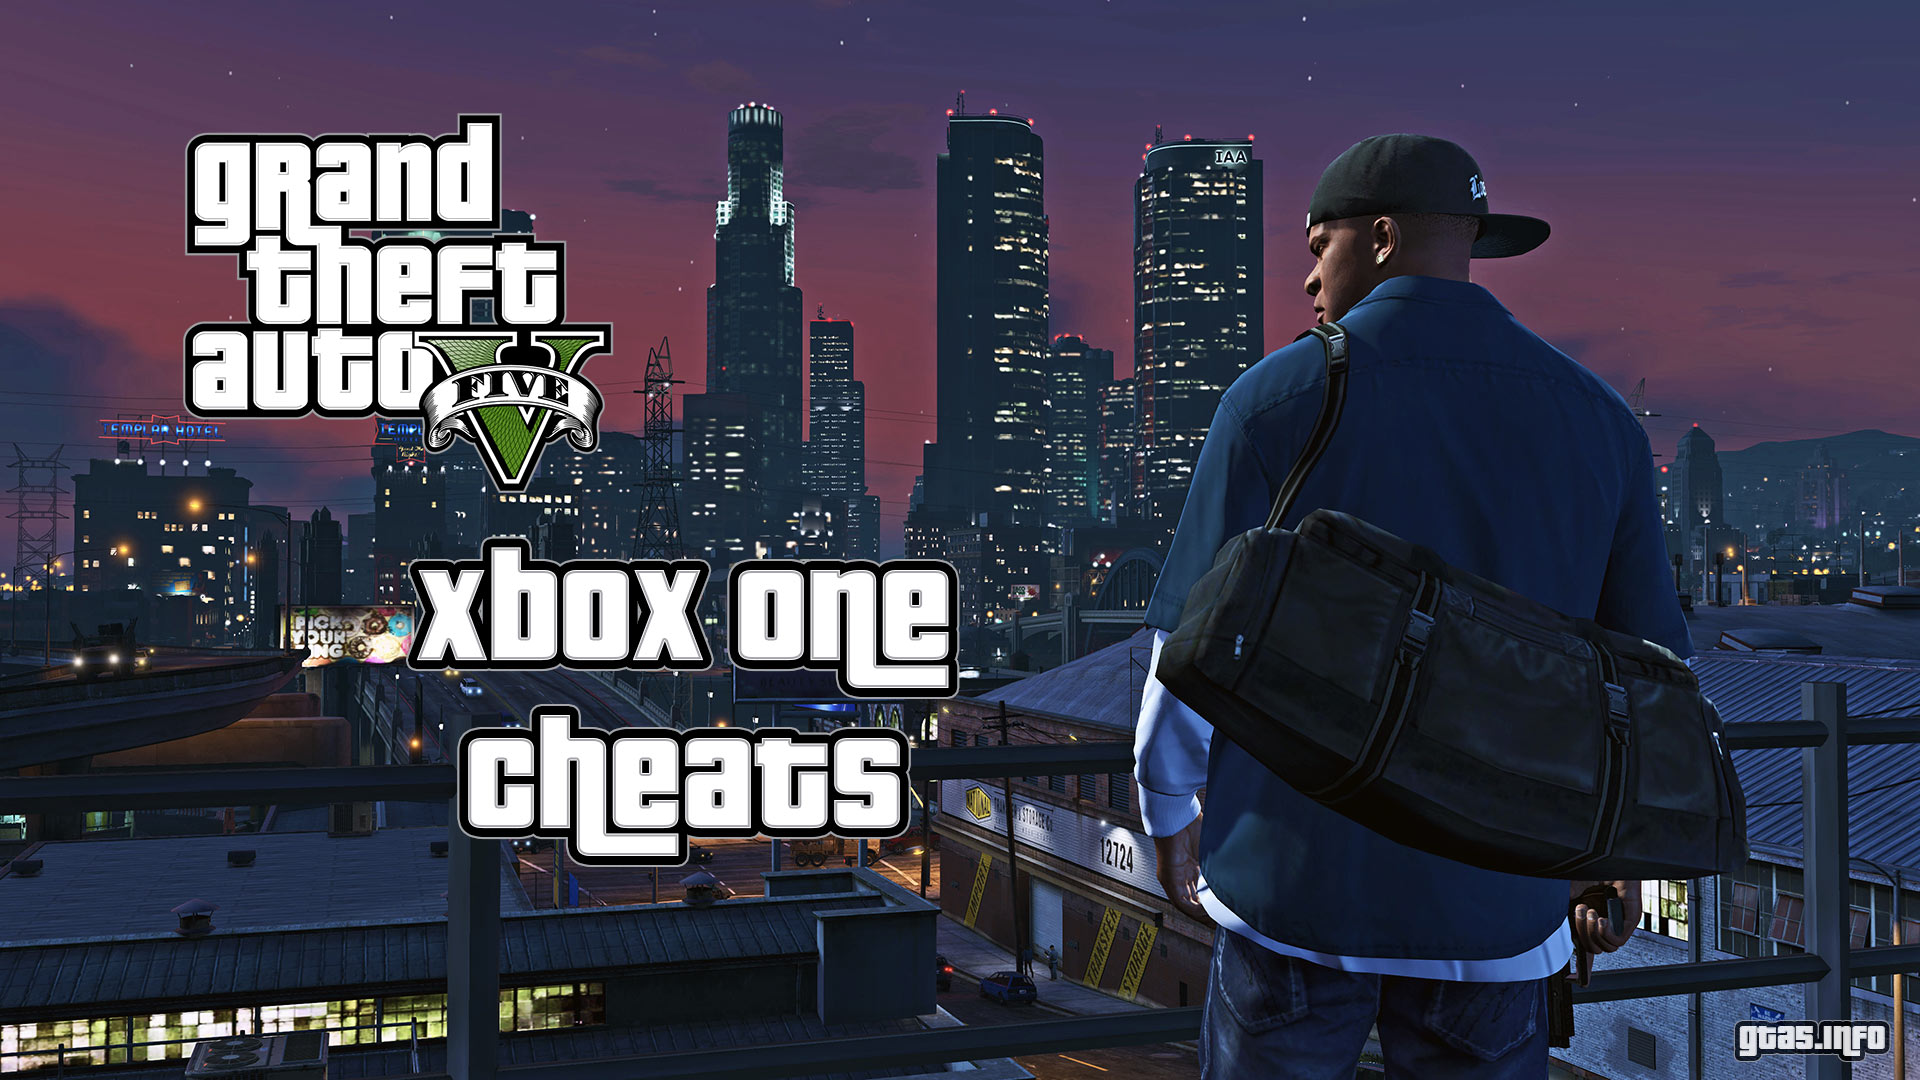 GTA 5 Xbox One Cheats - Grand Theft Auto V Cheat Codes